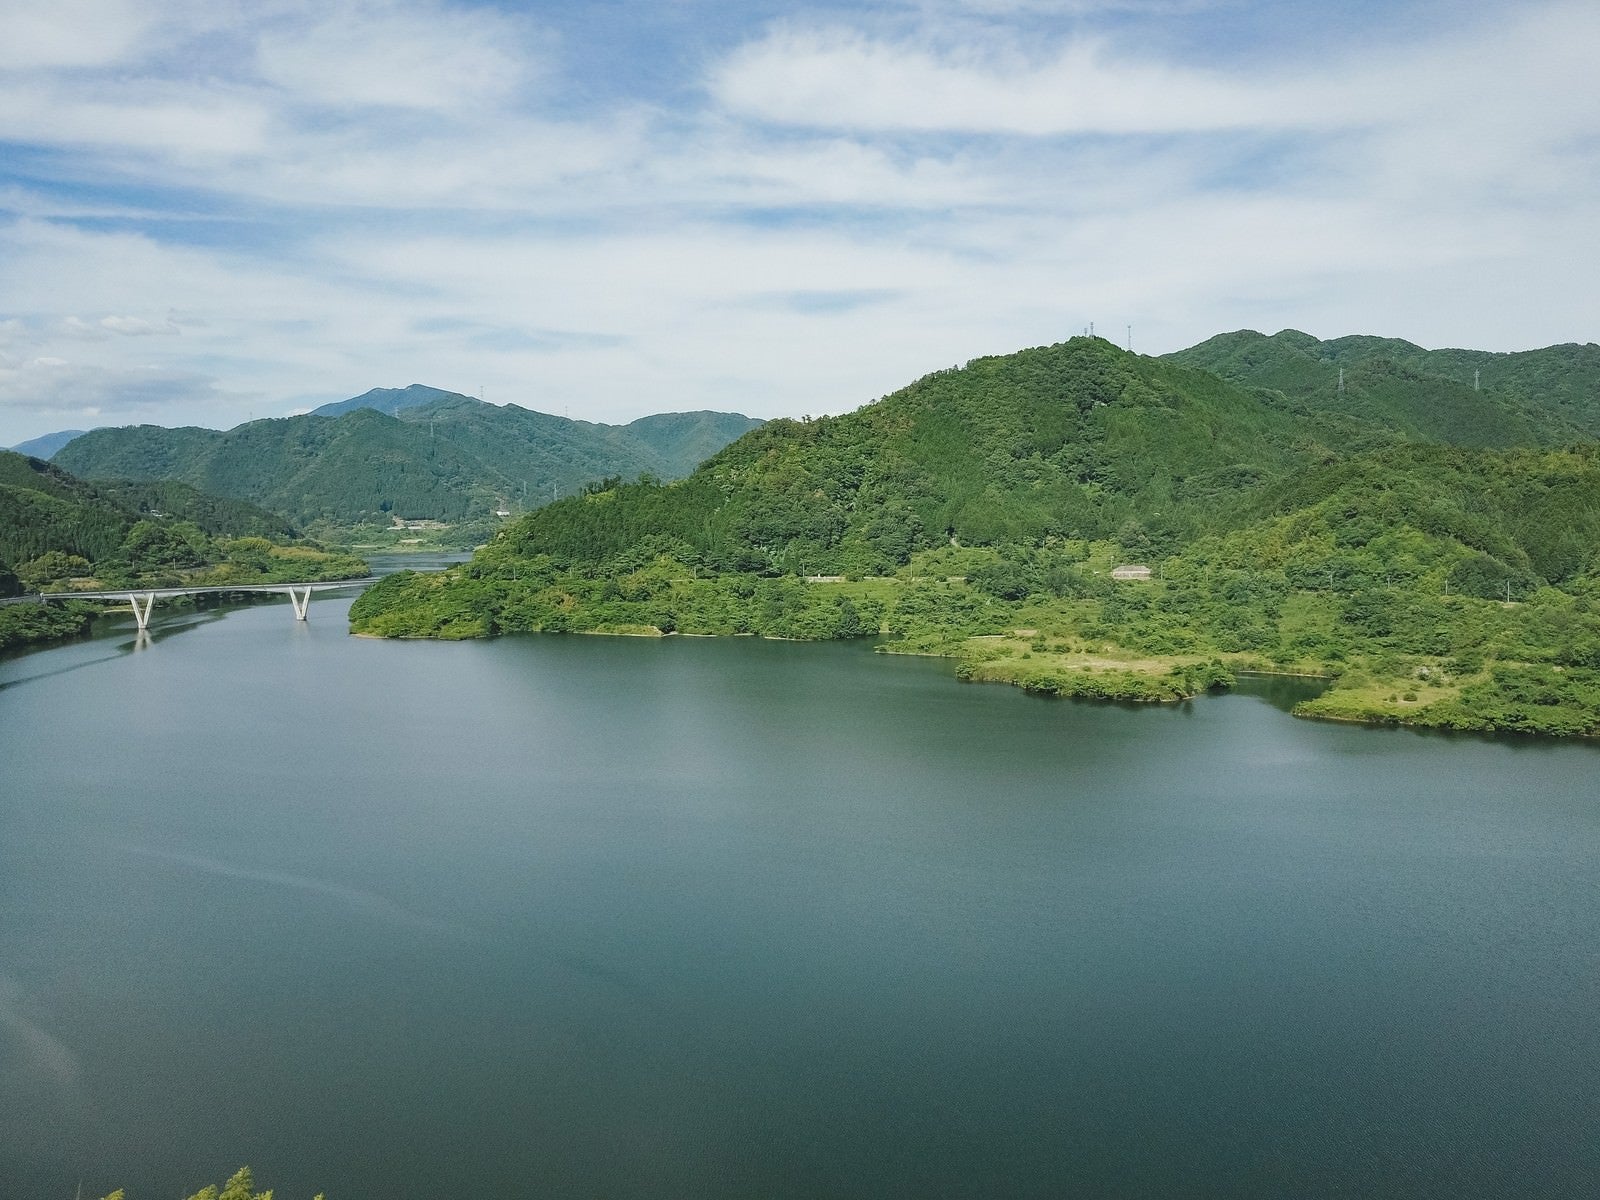 「自然に囲まれた鏡野町にある奥津湖の様子」の写真